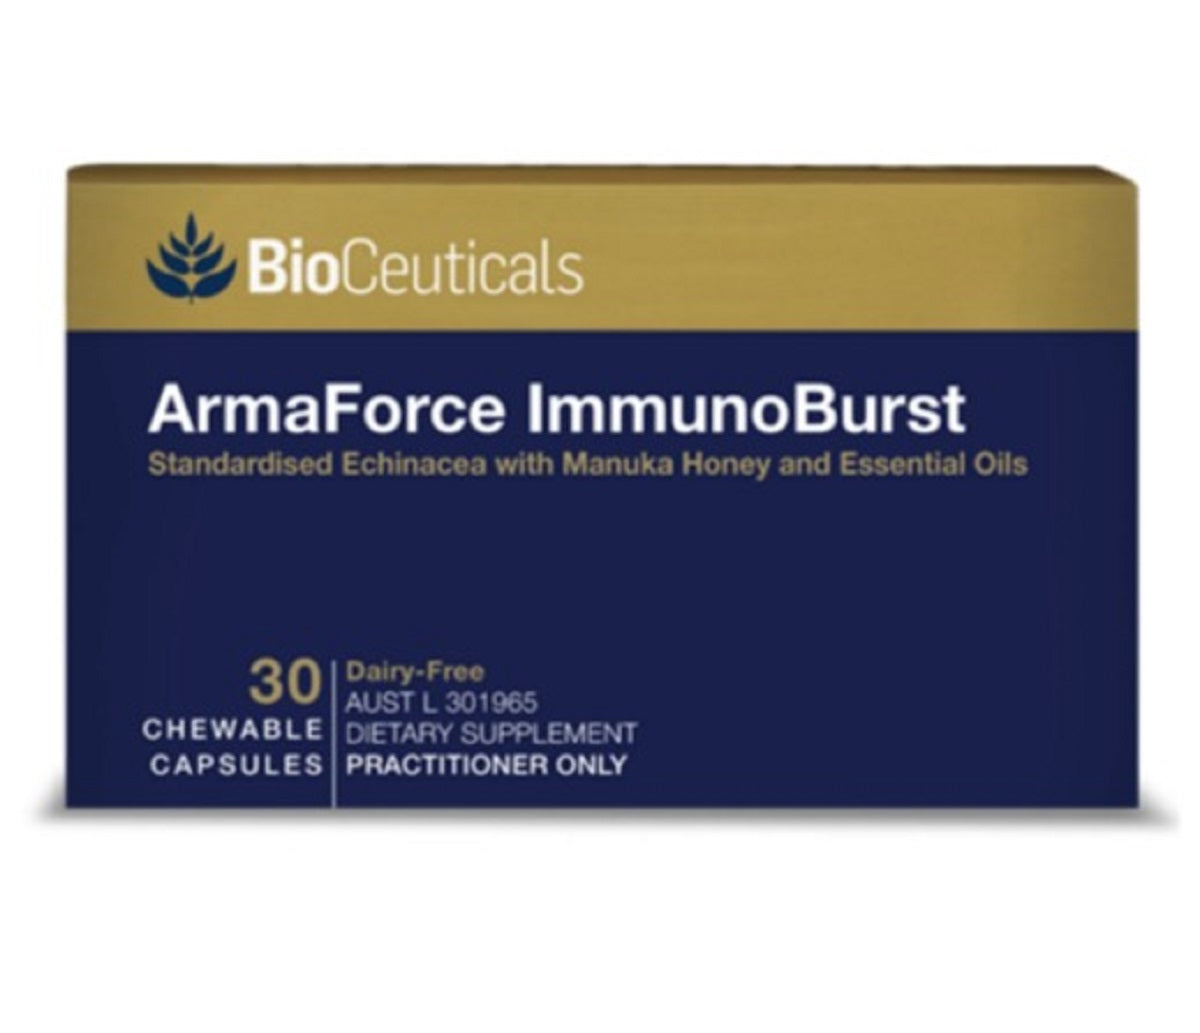 BioCeuticals ArmaForce ImmunoBurst 30 chewable capsules